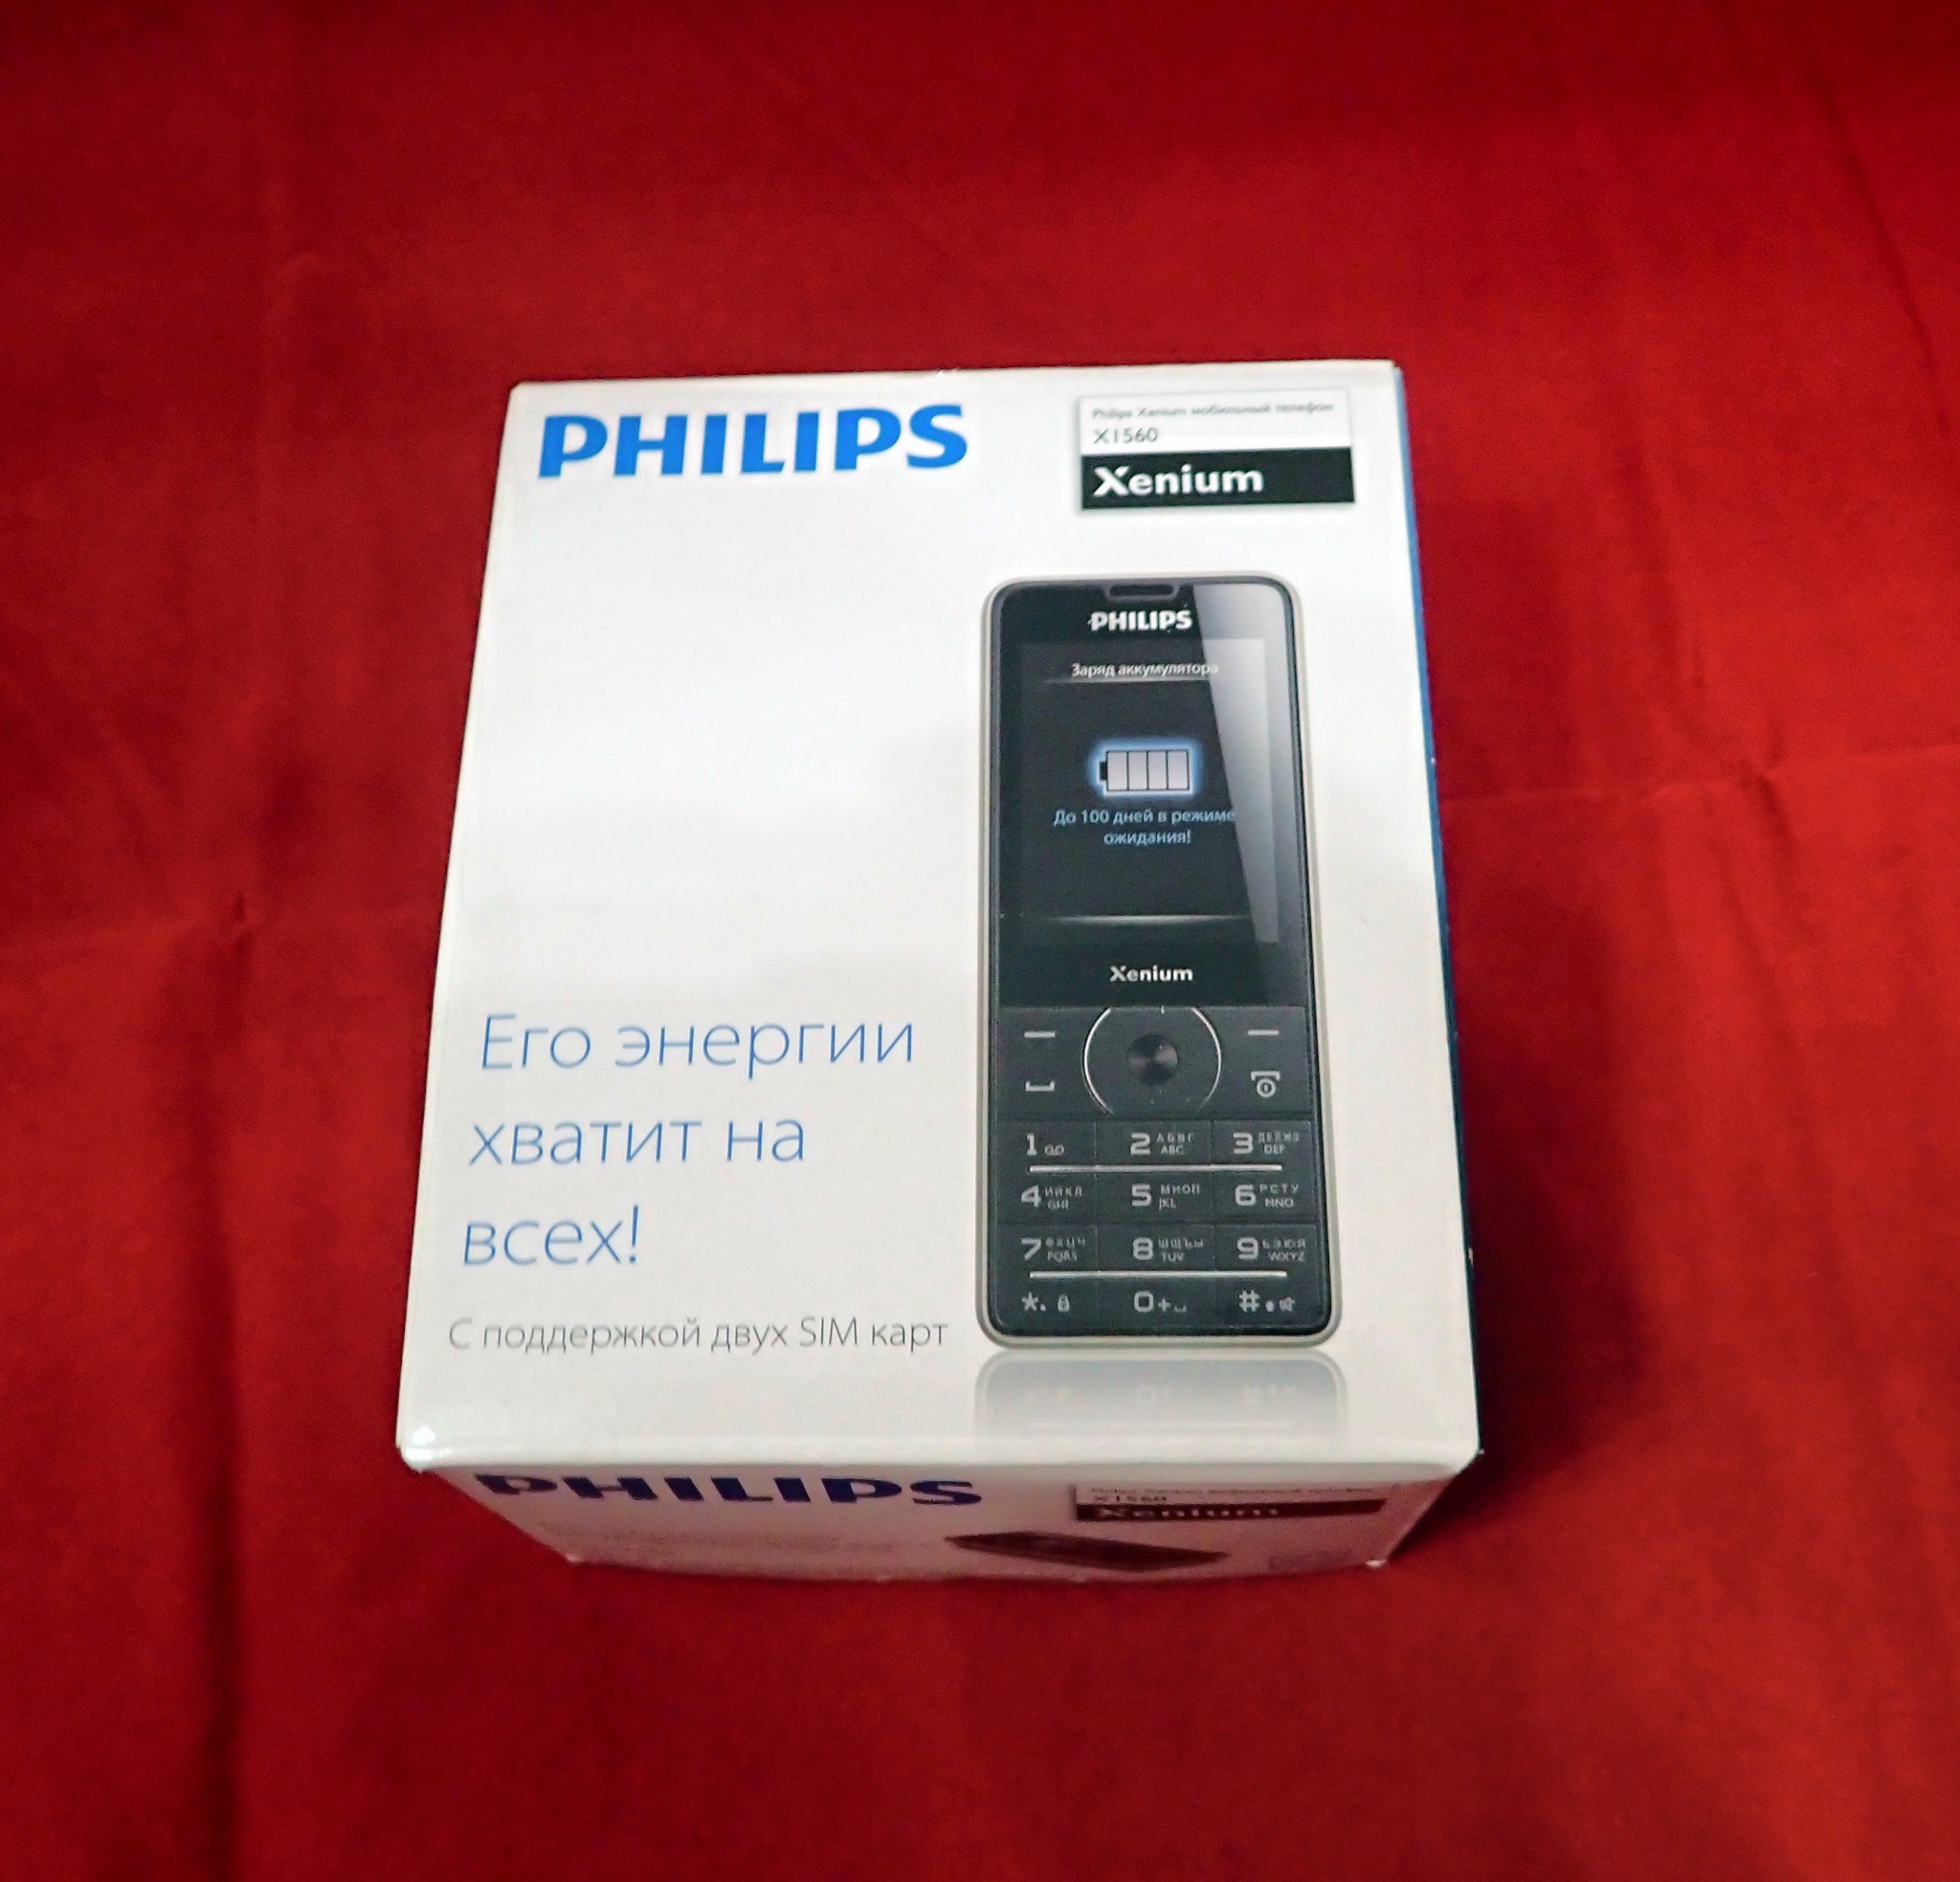 Подробнее о товаре "Мобильный телефон Philips Xenium X1560 Black"...